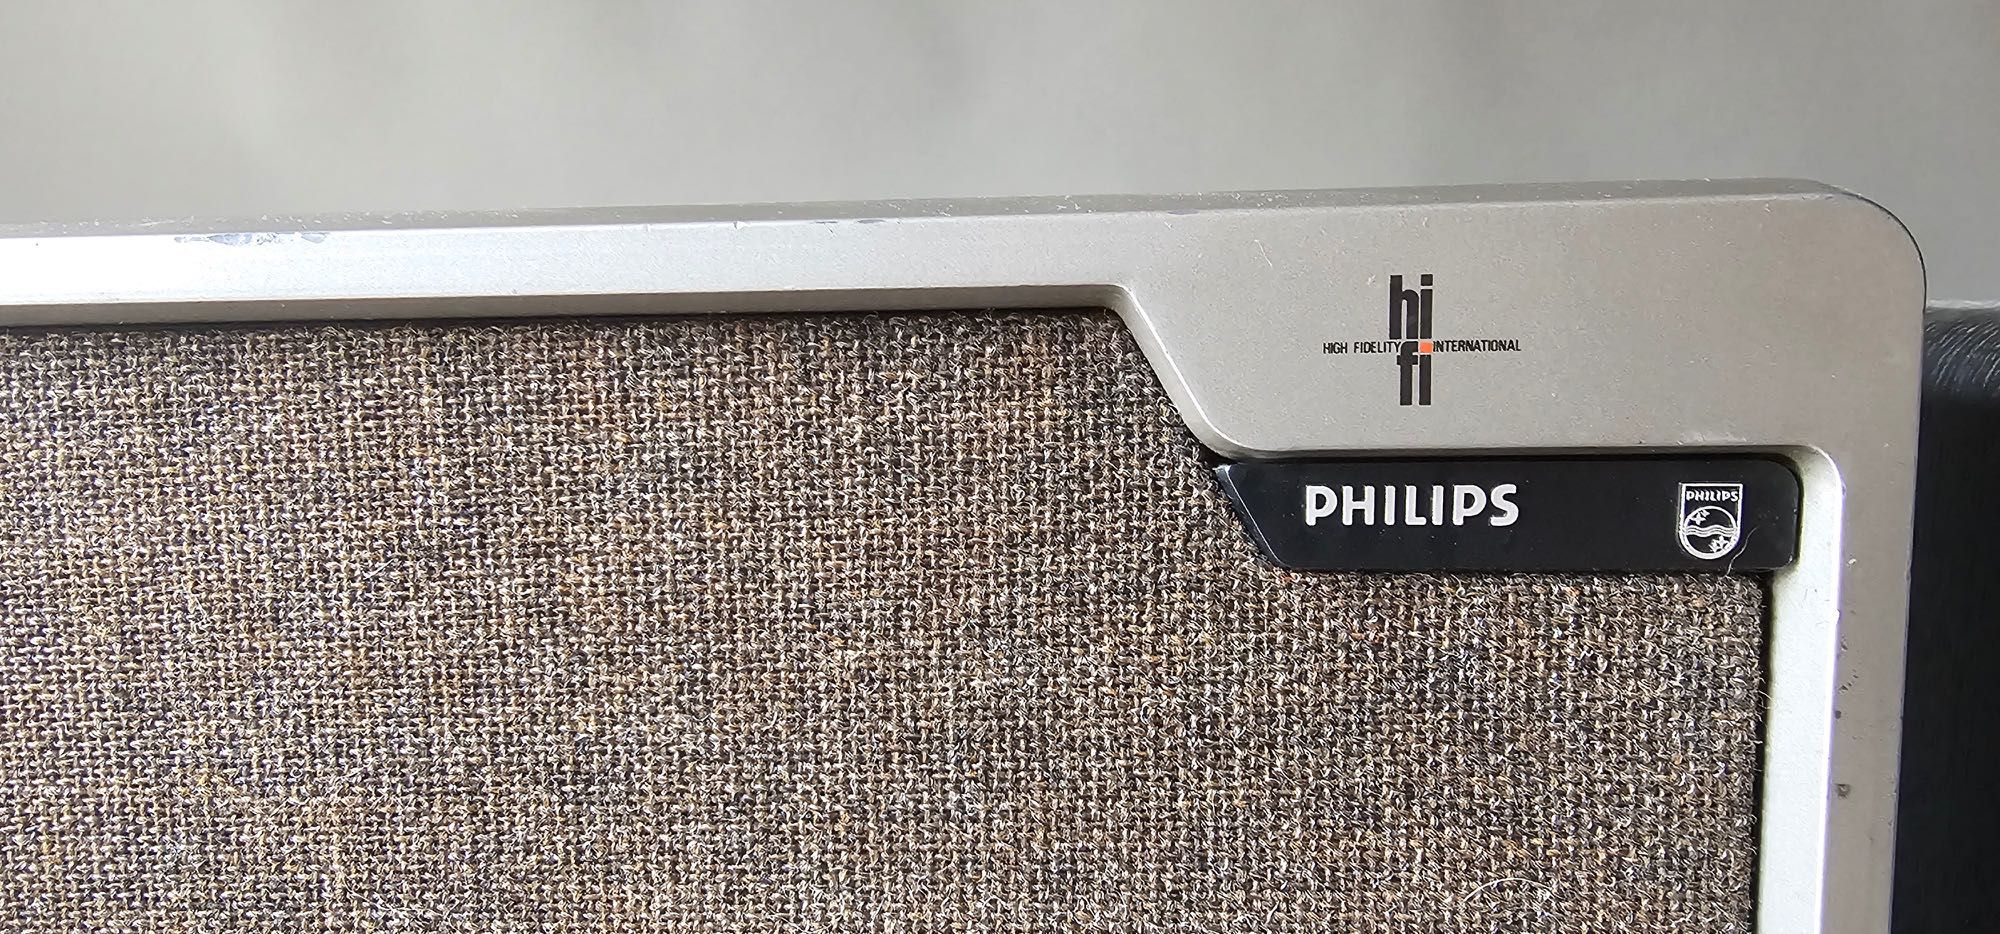 Kolumny Philips 22AH467/01R plus standy/stojaki VINTAGE - mega okazja